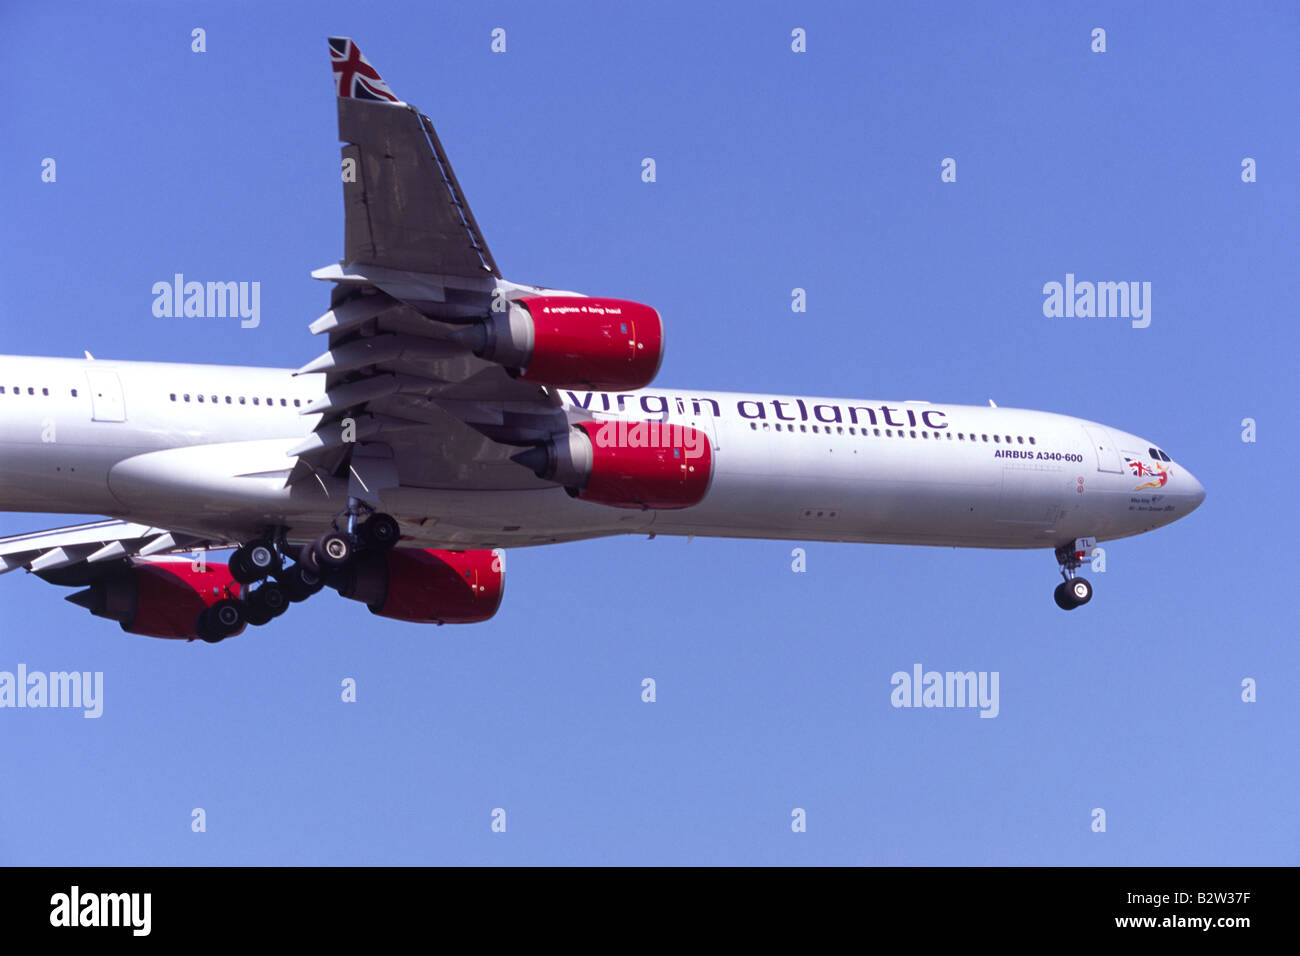 Airbus A340 betrieben von Virgin Atlantic im Landeanflug auf dem Flughafen London Heathrow Stockfoto